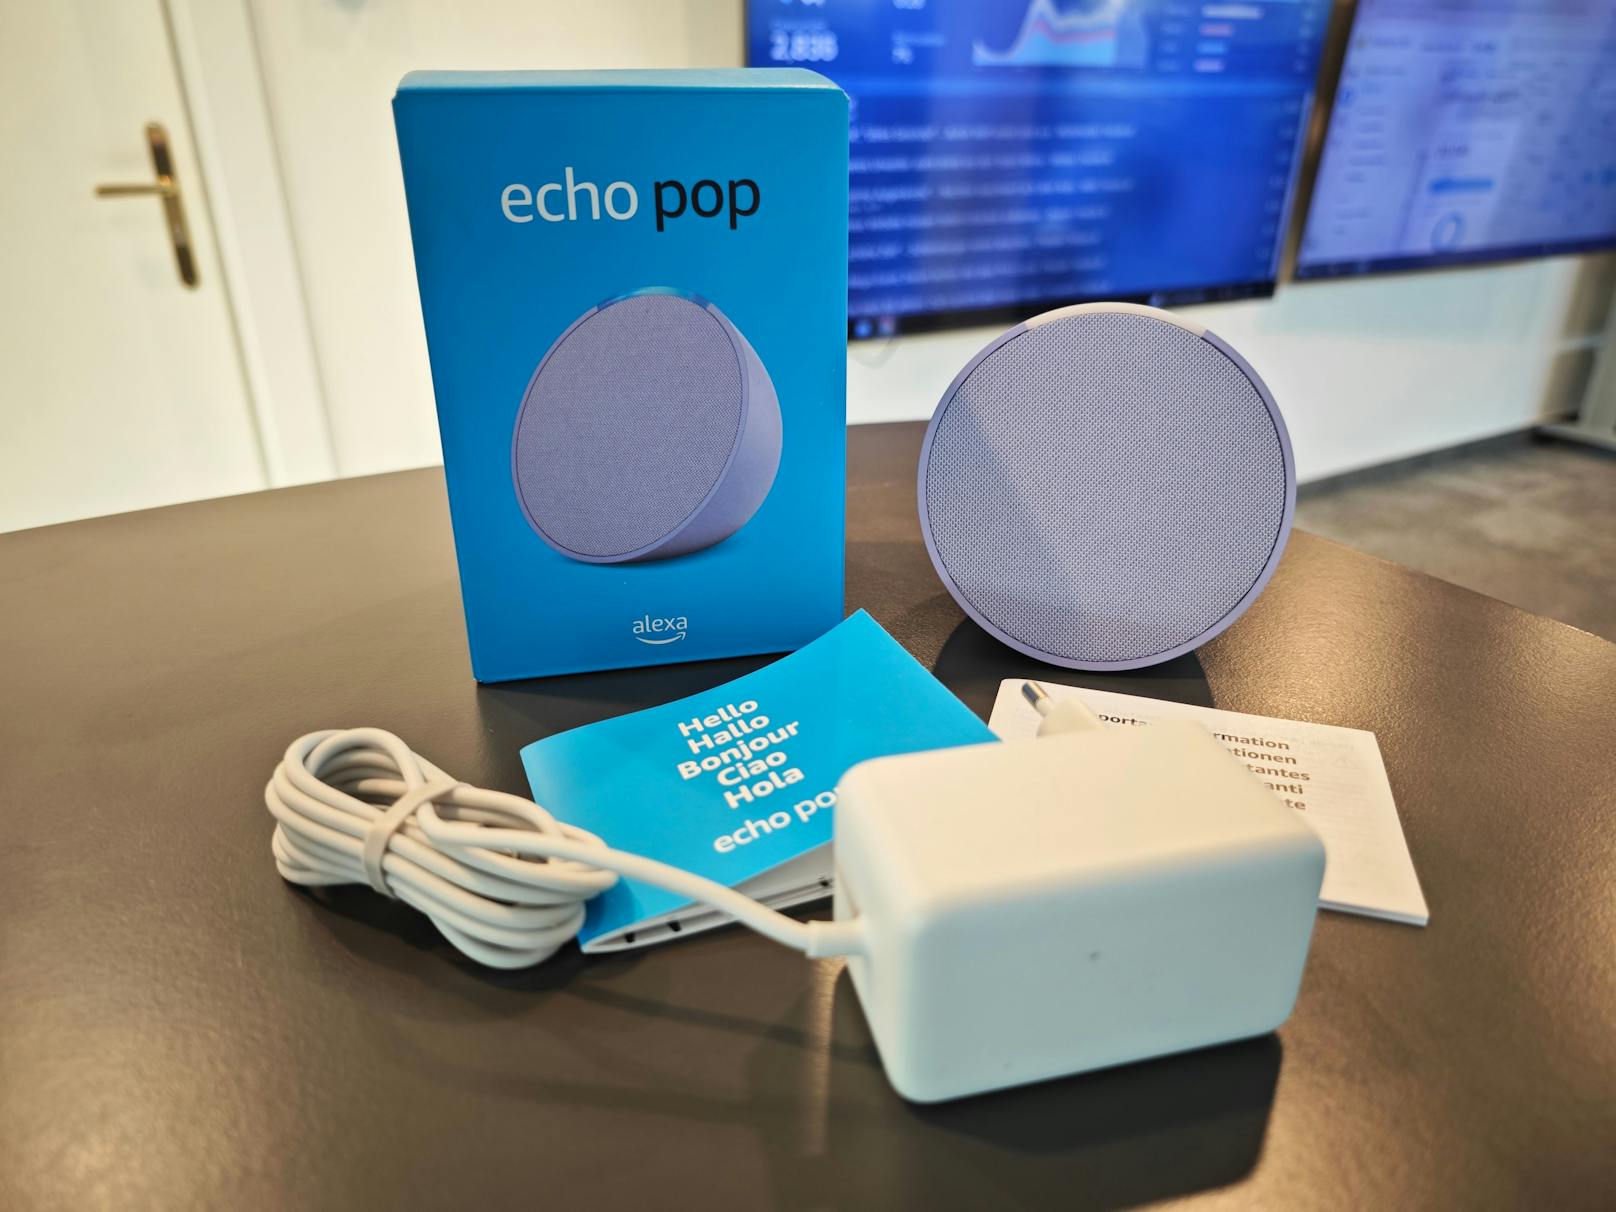 ... dem neuen Echo Pop sogar noch billiger. Den neuen Smart Speaker gibt es bereits um 55,45 Euro in den Farben Anthrazit, Blaugrün, Lavendel oder Weiß.&nbsp;